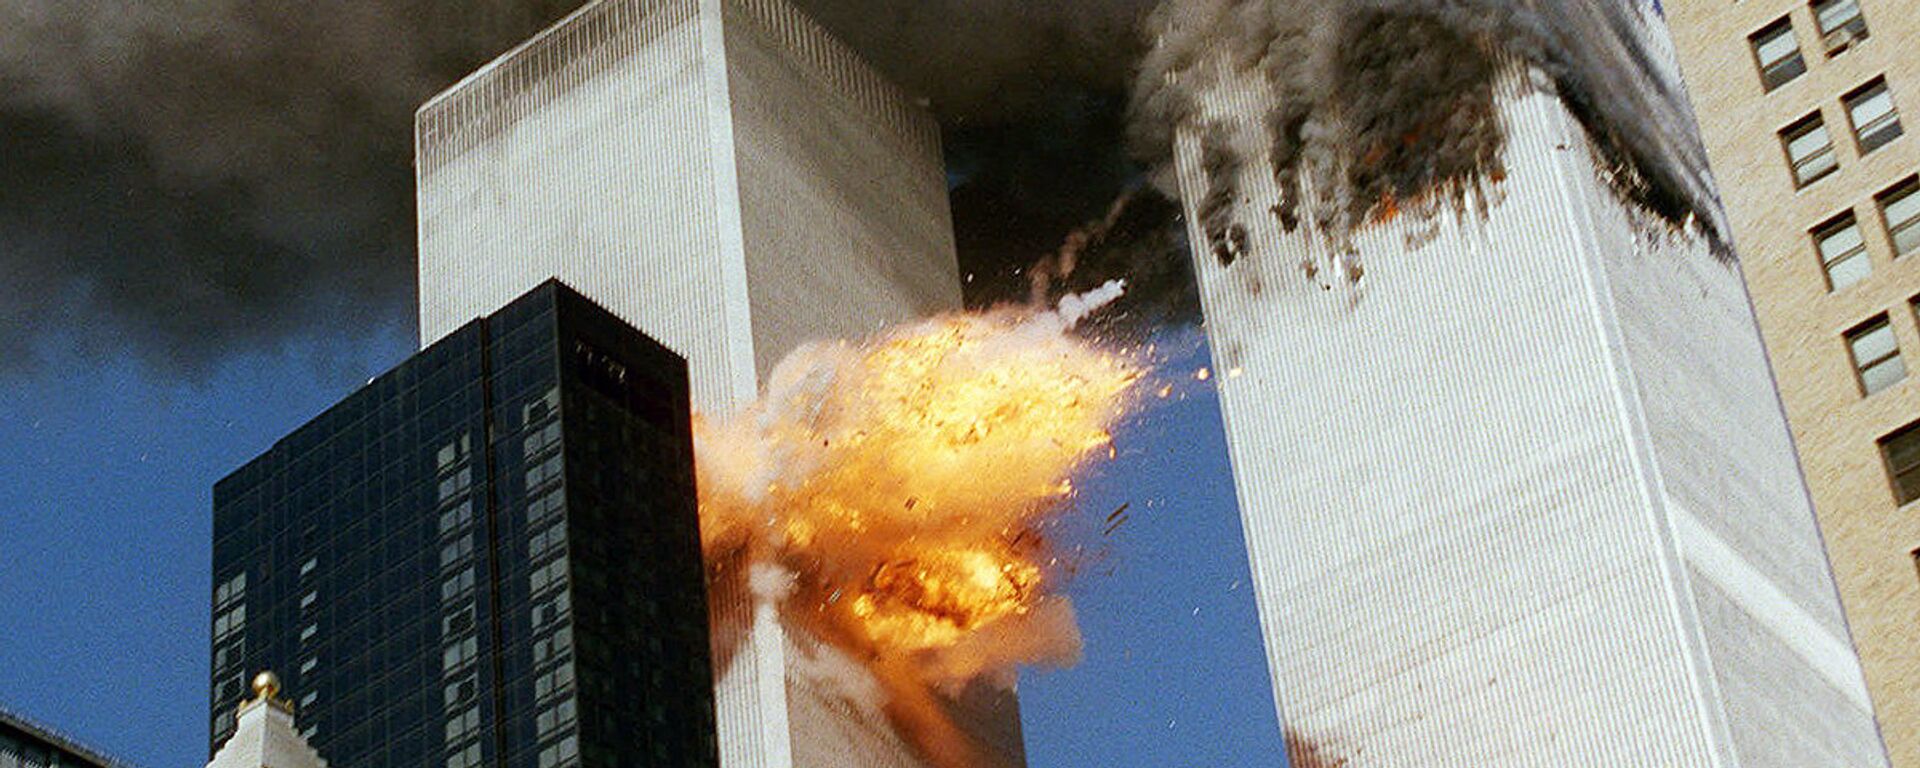 Во время теракта 11 сентября 2001 года в Нью-Йорке - Sputnik Узбекистан, 1920, 09.02.2017